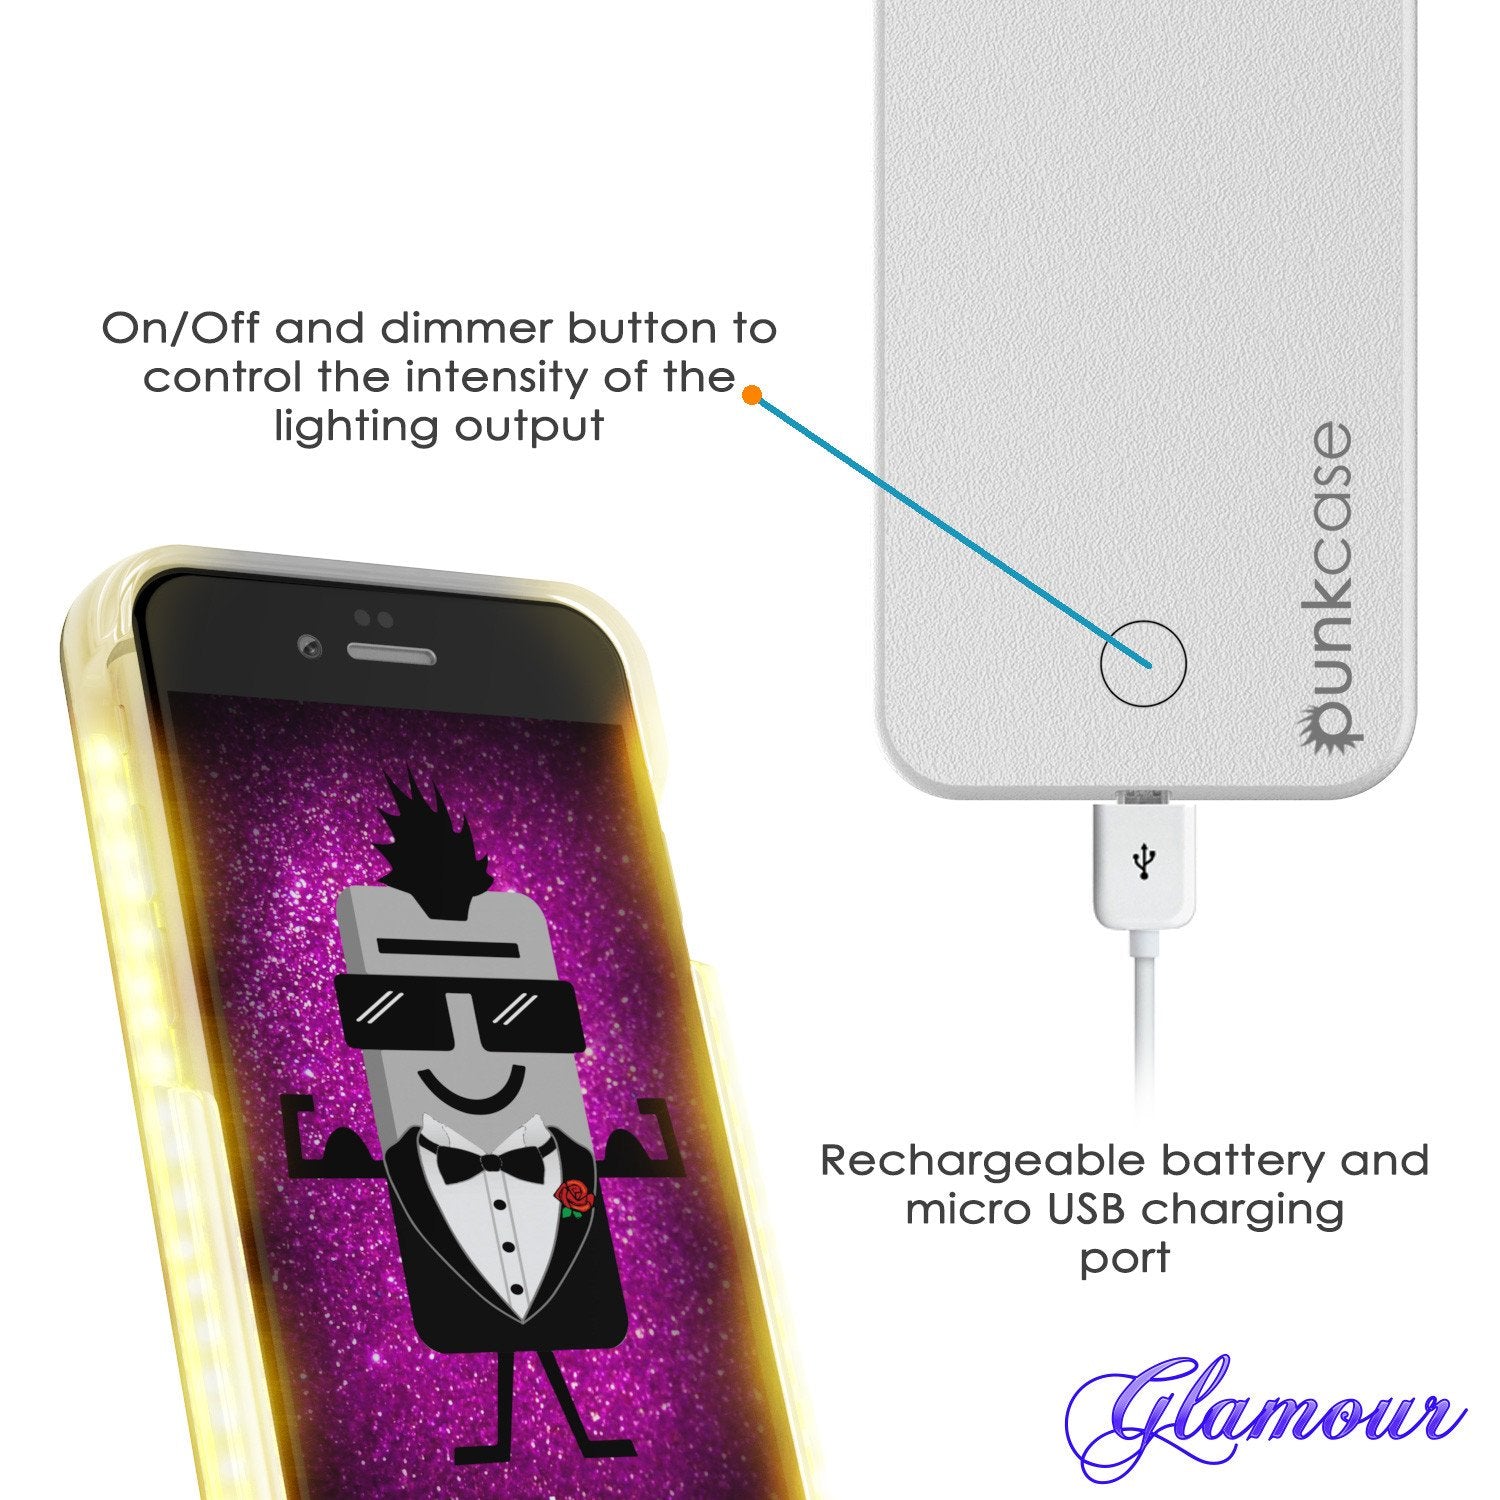 iPhone 6+/6S+ Plus Punkcase LED Light Case Light Illuminated Case, WHITE W/  Battery Power Bank